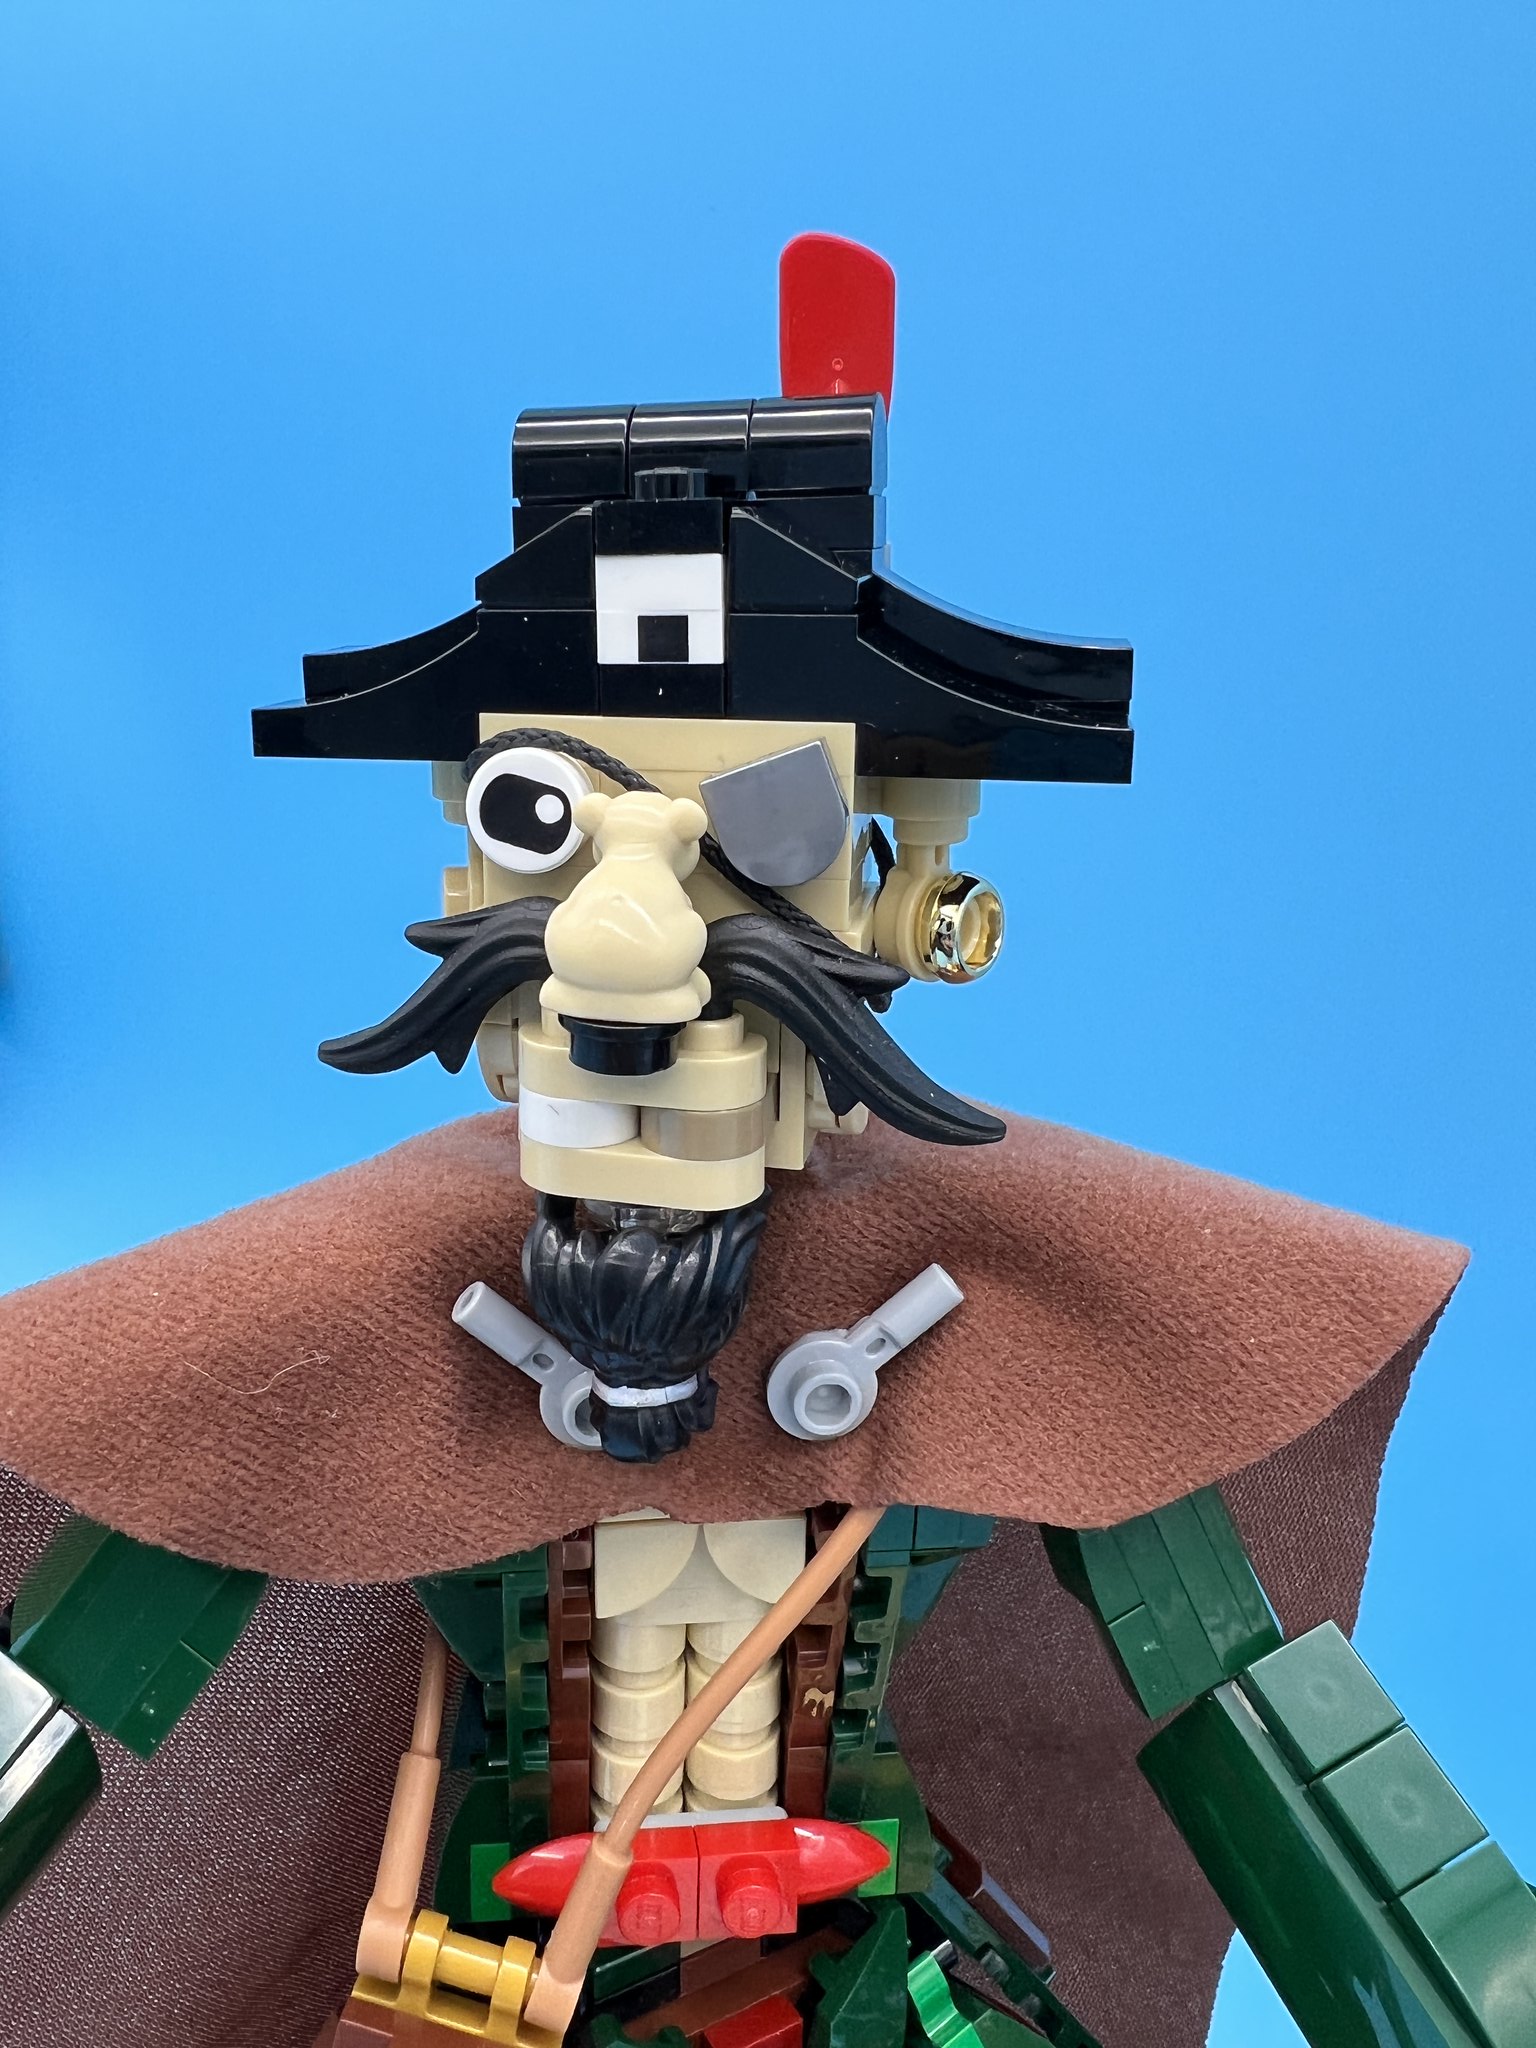 Pirate Captain’s quarters